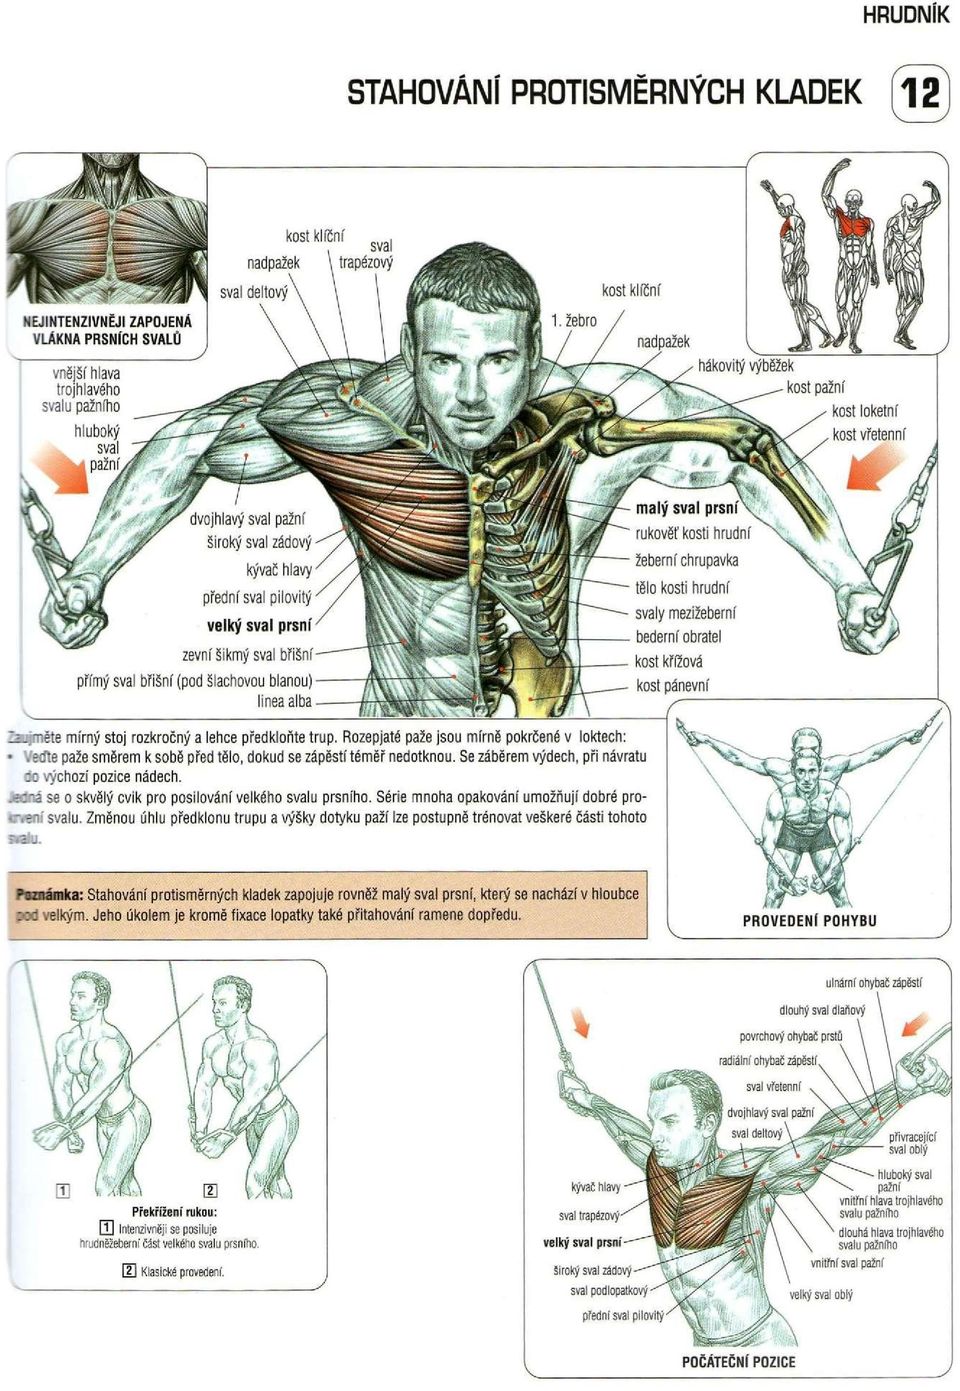 Série mnoha opakování umožňují dobré pro- - svalu.